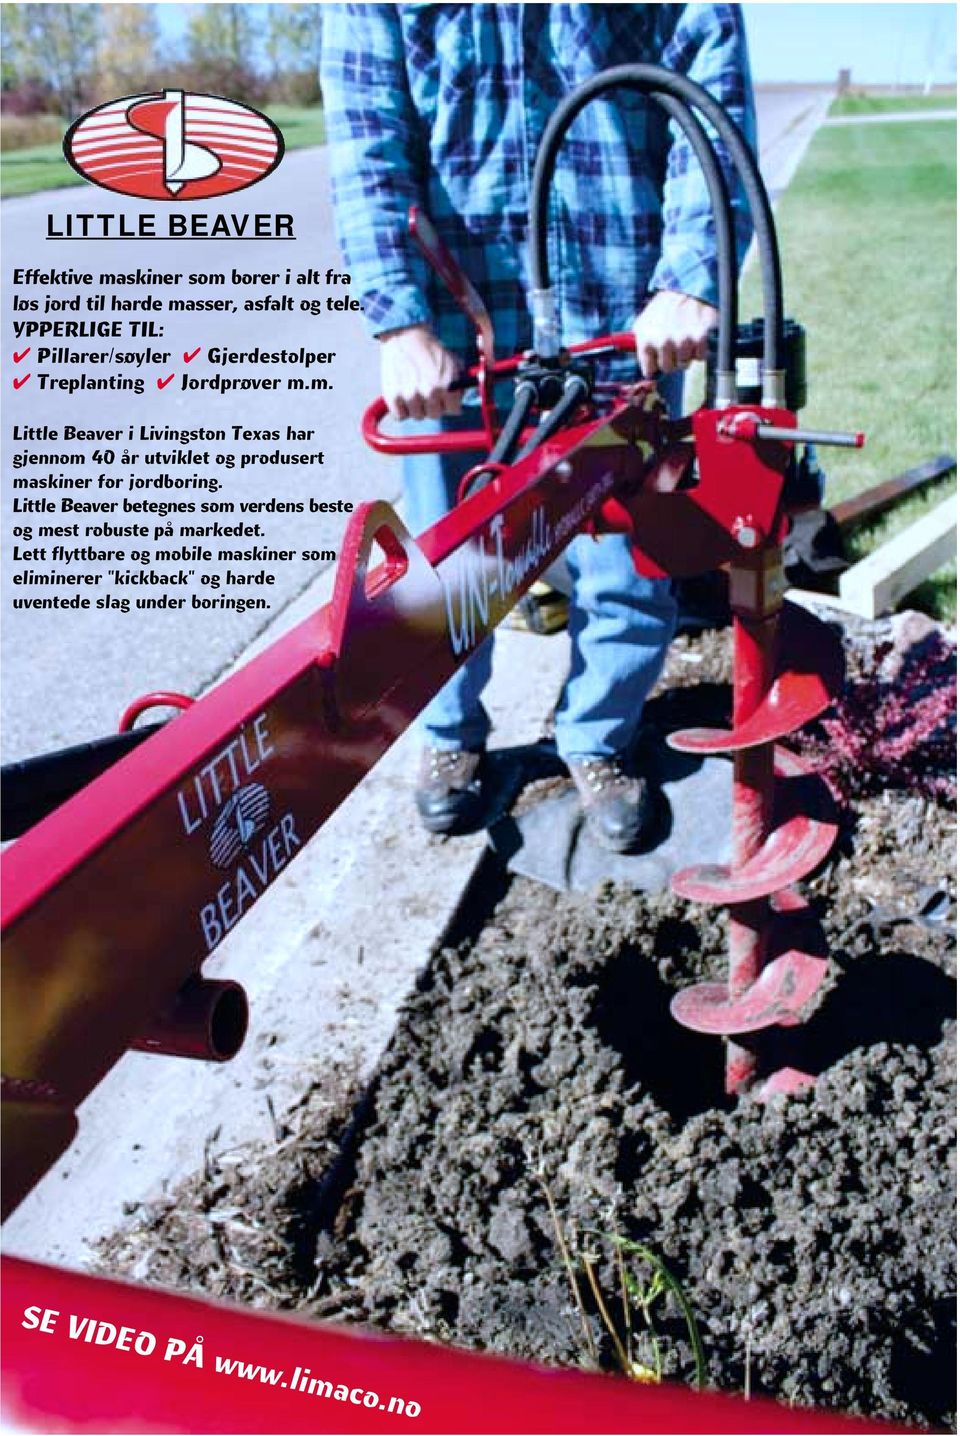 m. Little Beaver i Livingston Texas har gjennom 40 år utviklet og produsert maskiner for jordboring.